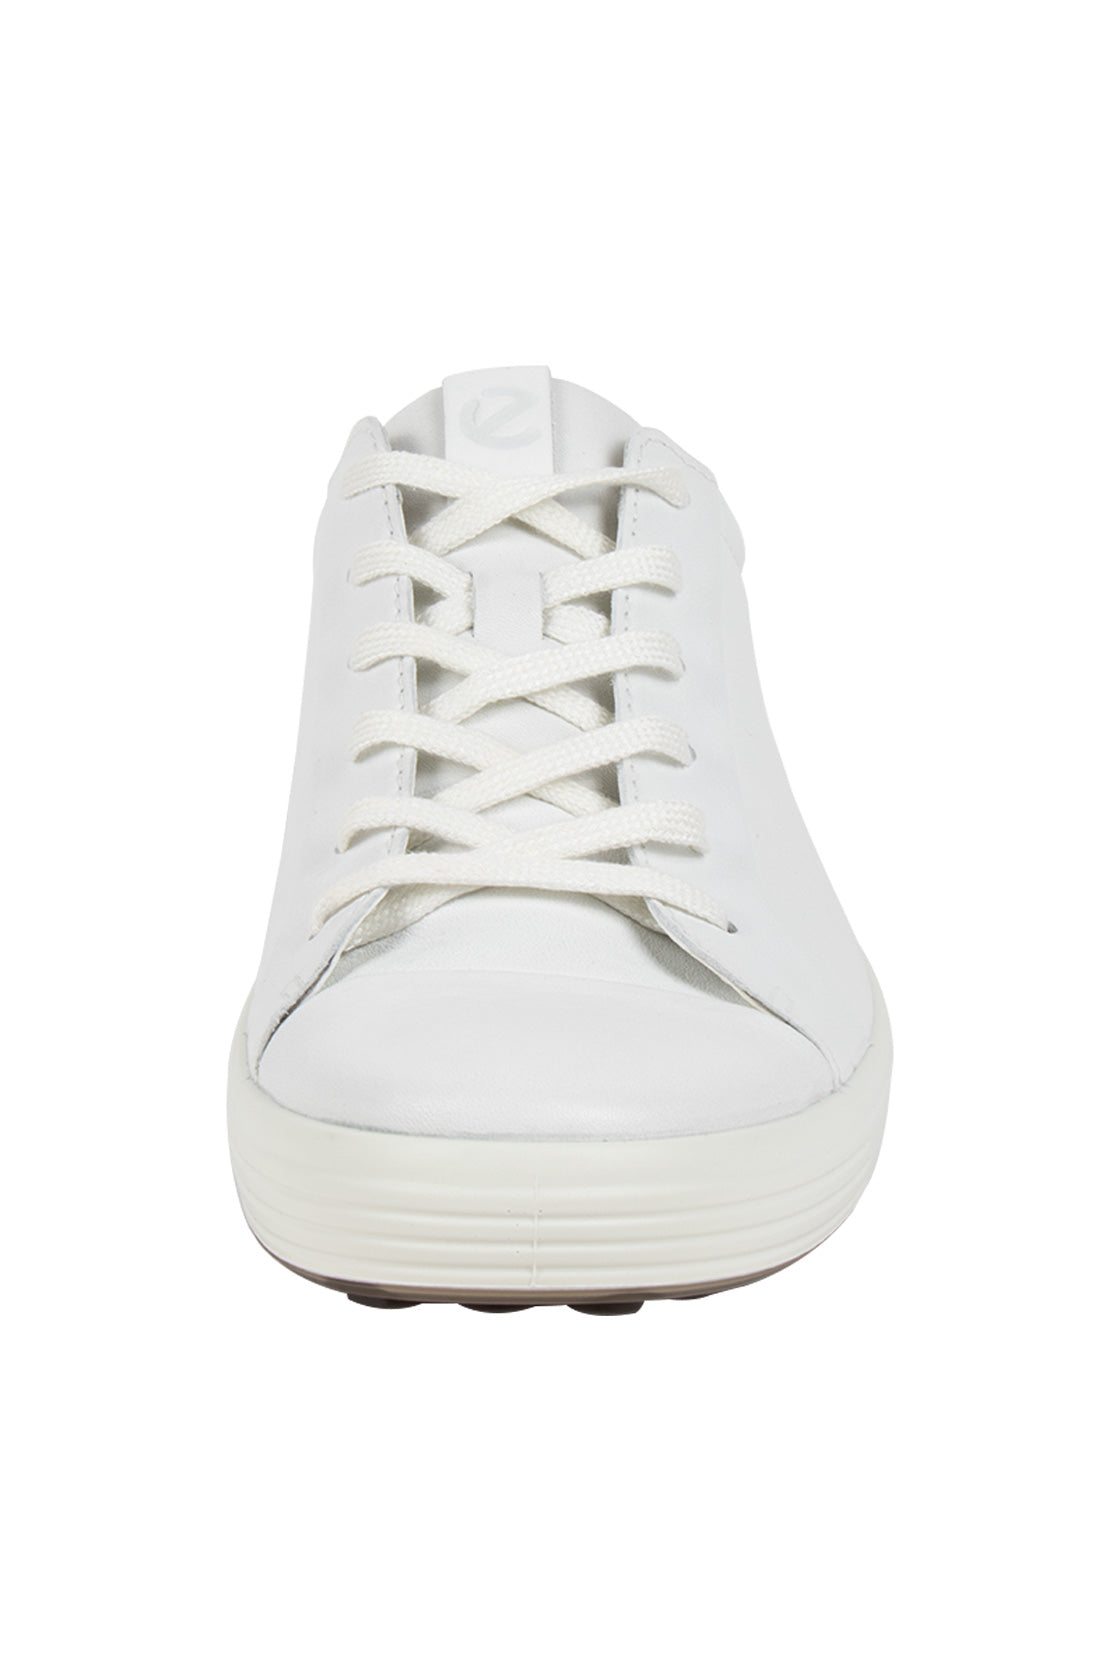 ECCO Soft 7 Sneaker White